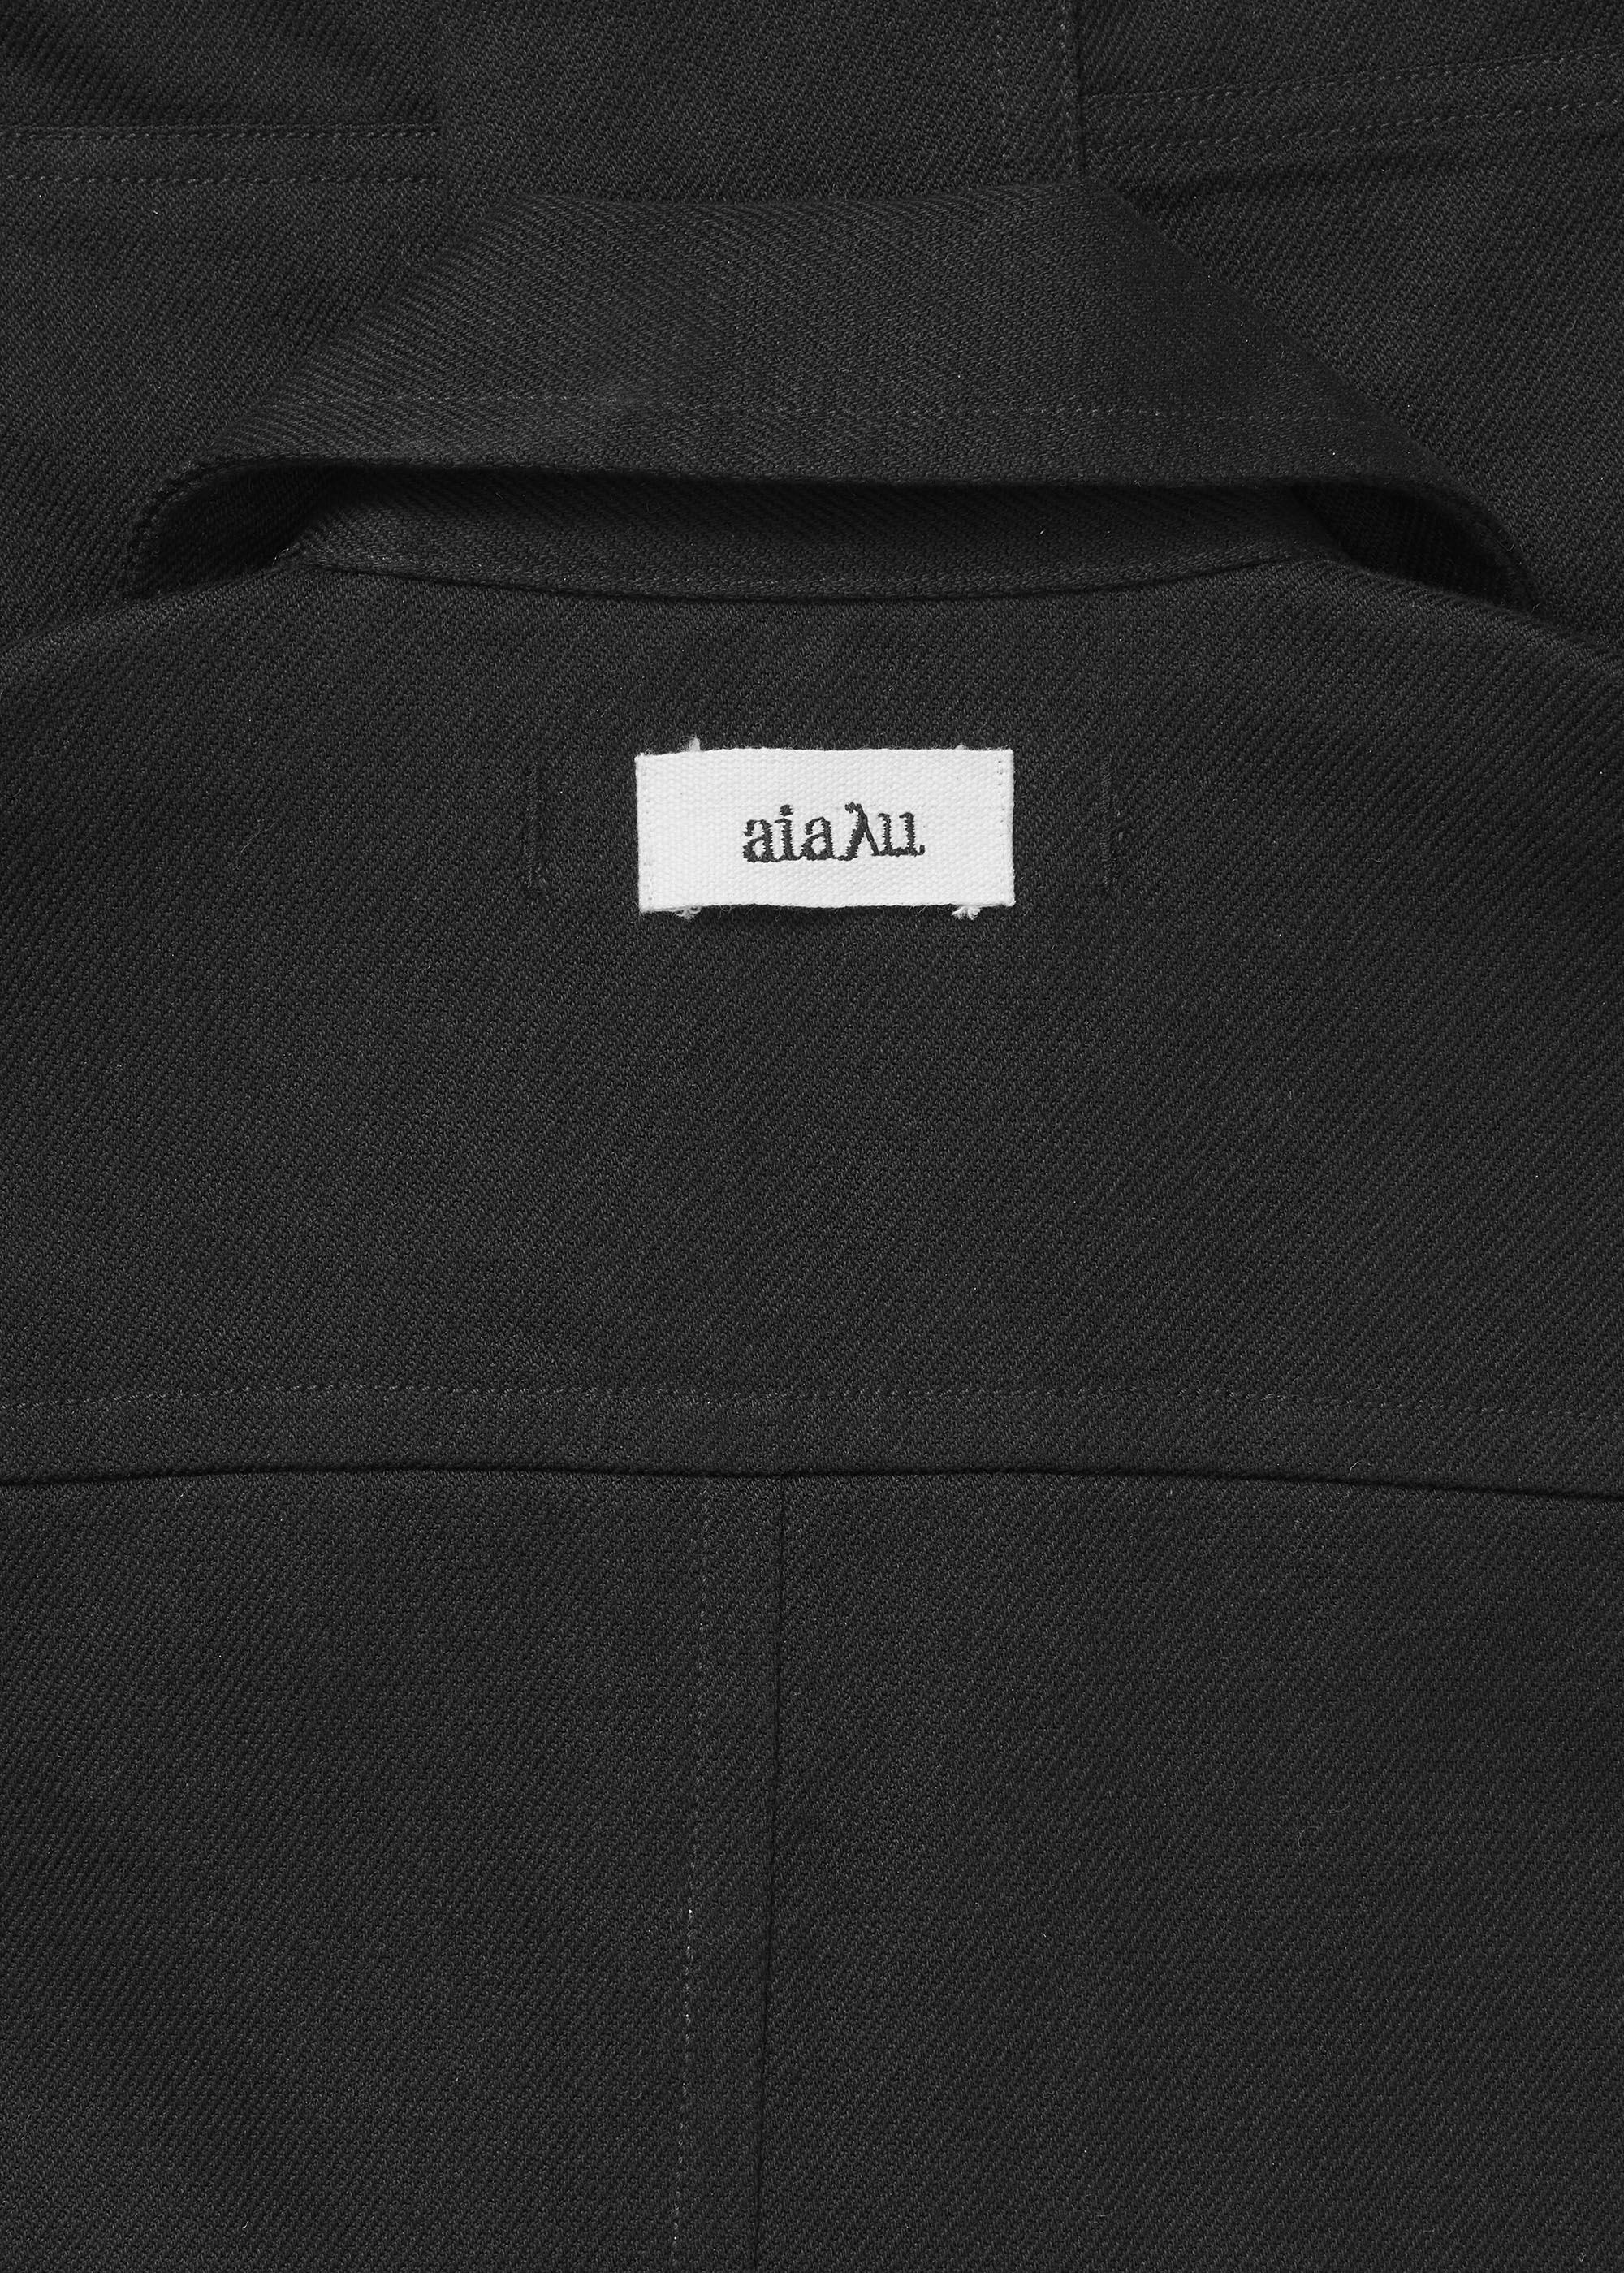 Outerwear - Florian jacket